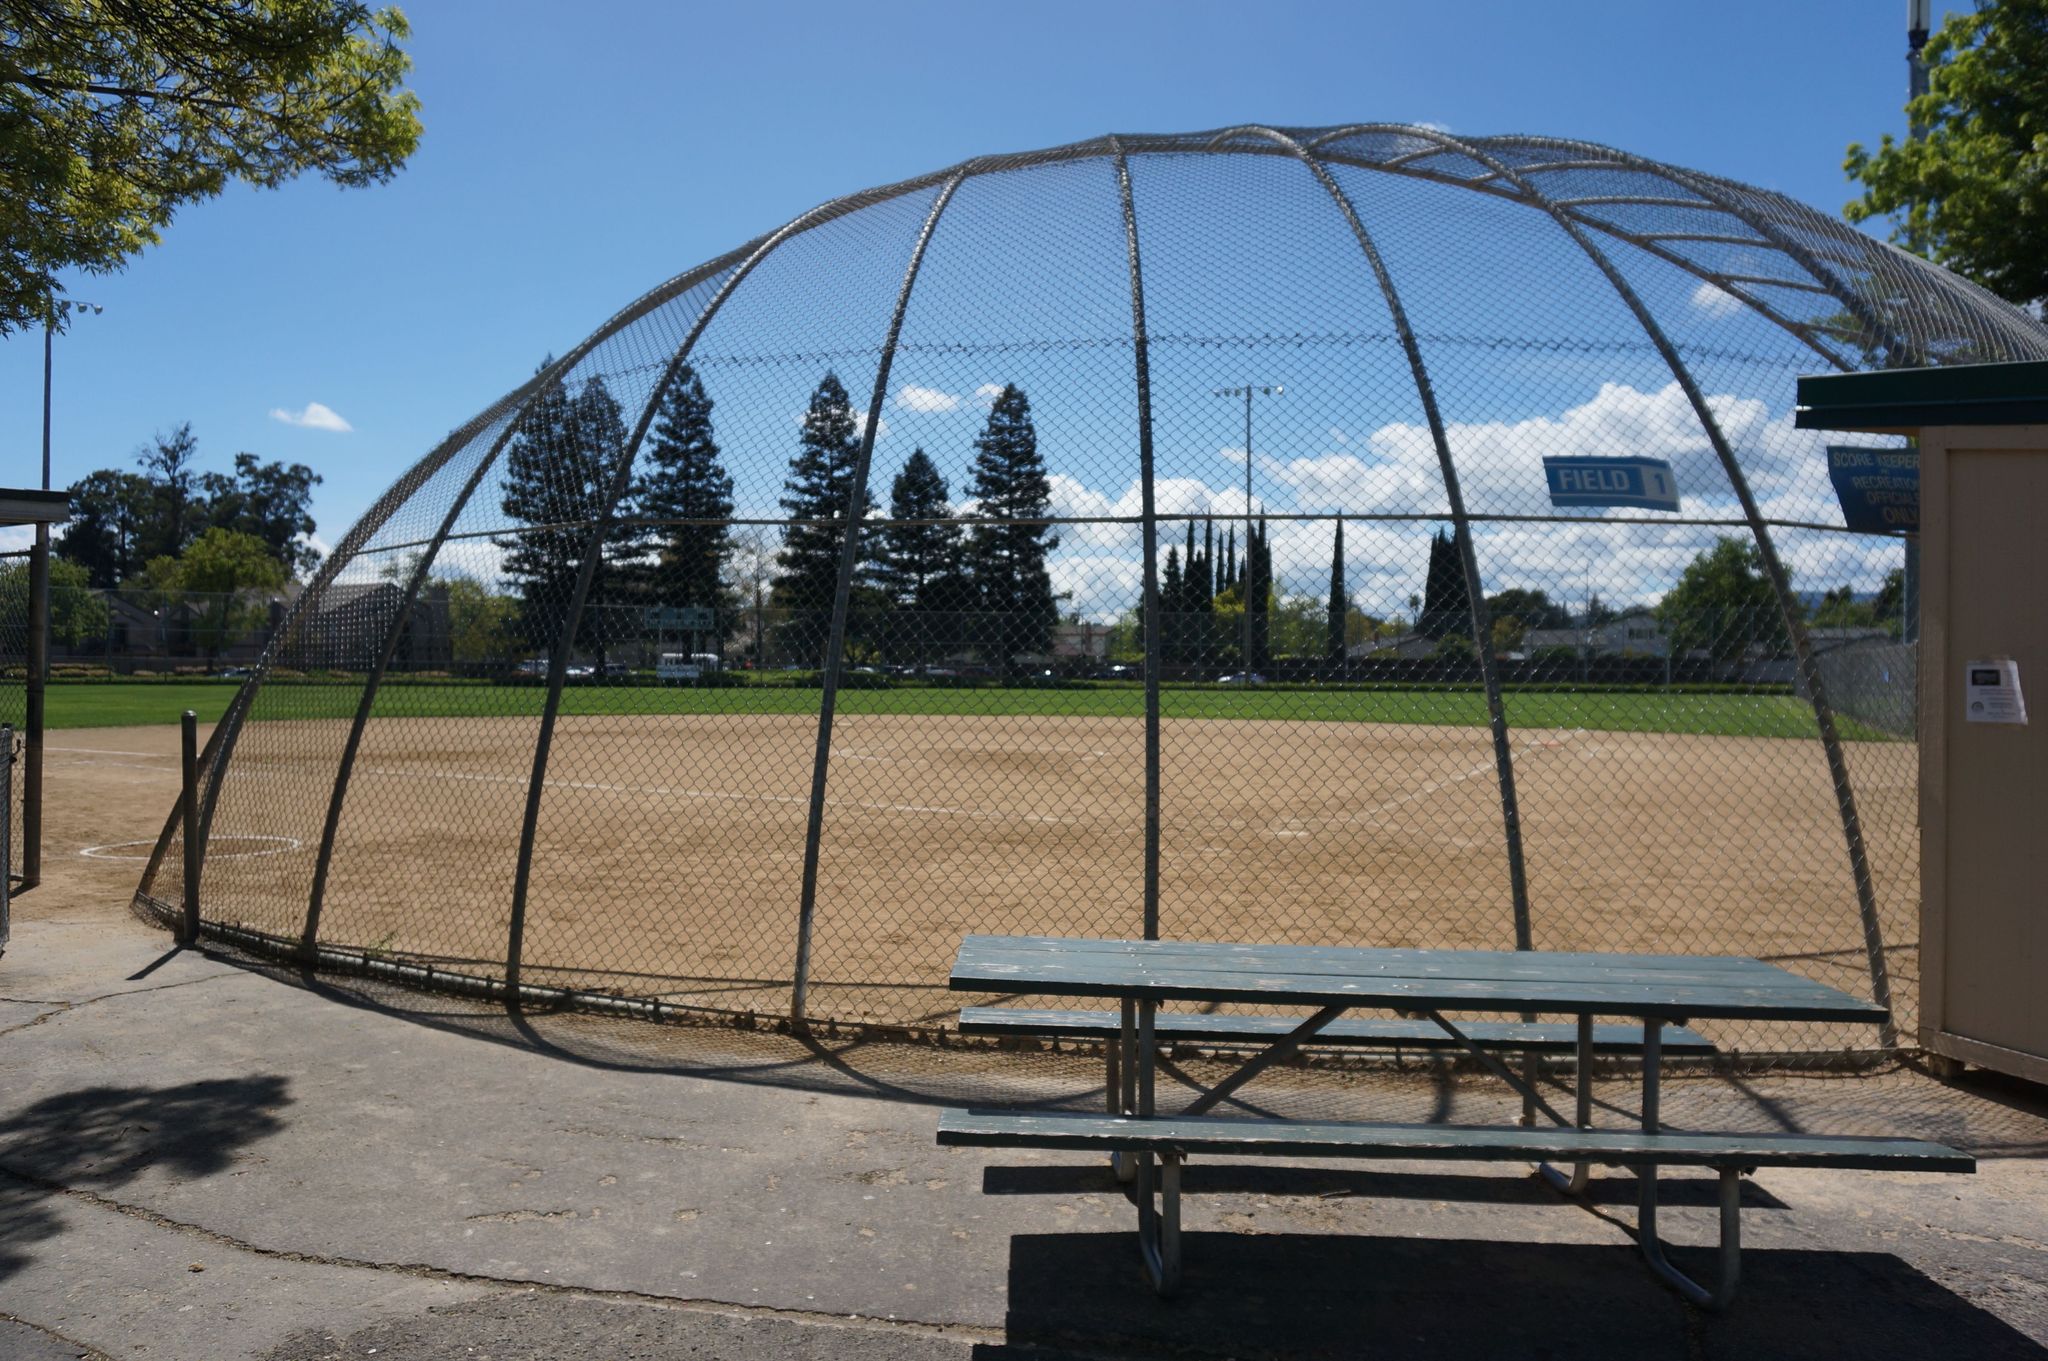 Nelson Park softball field